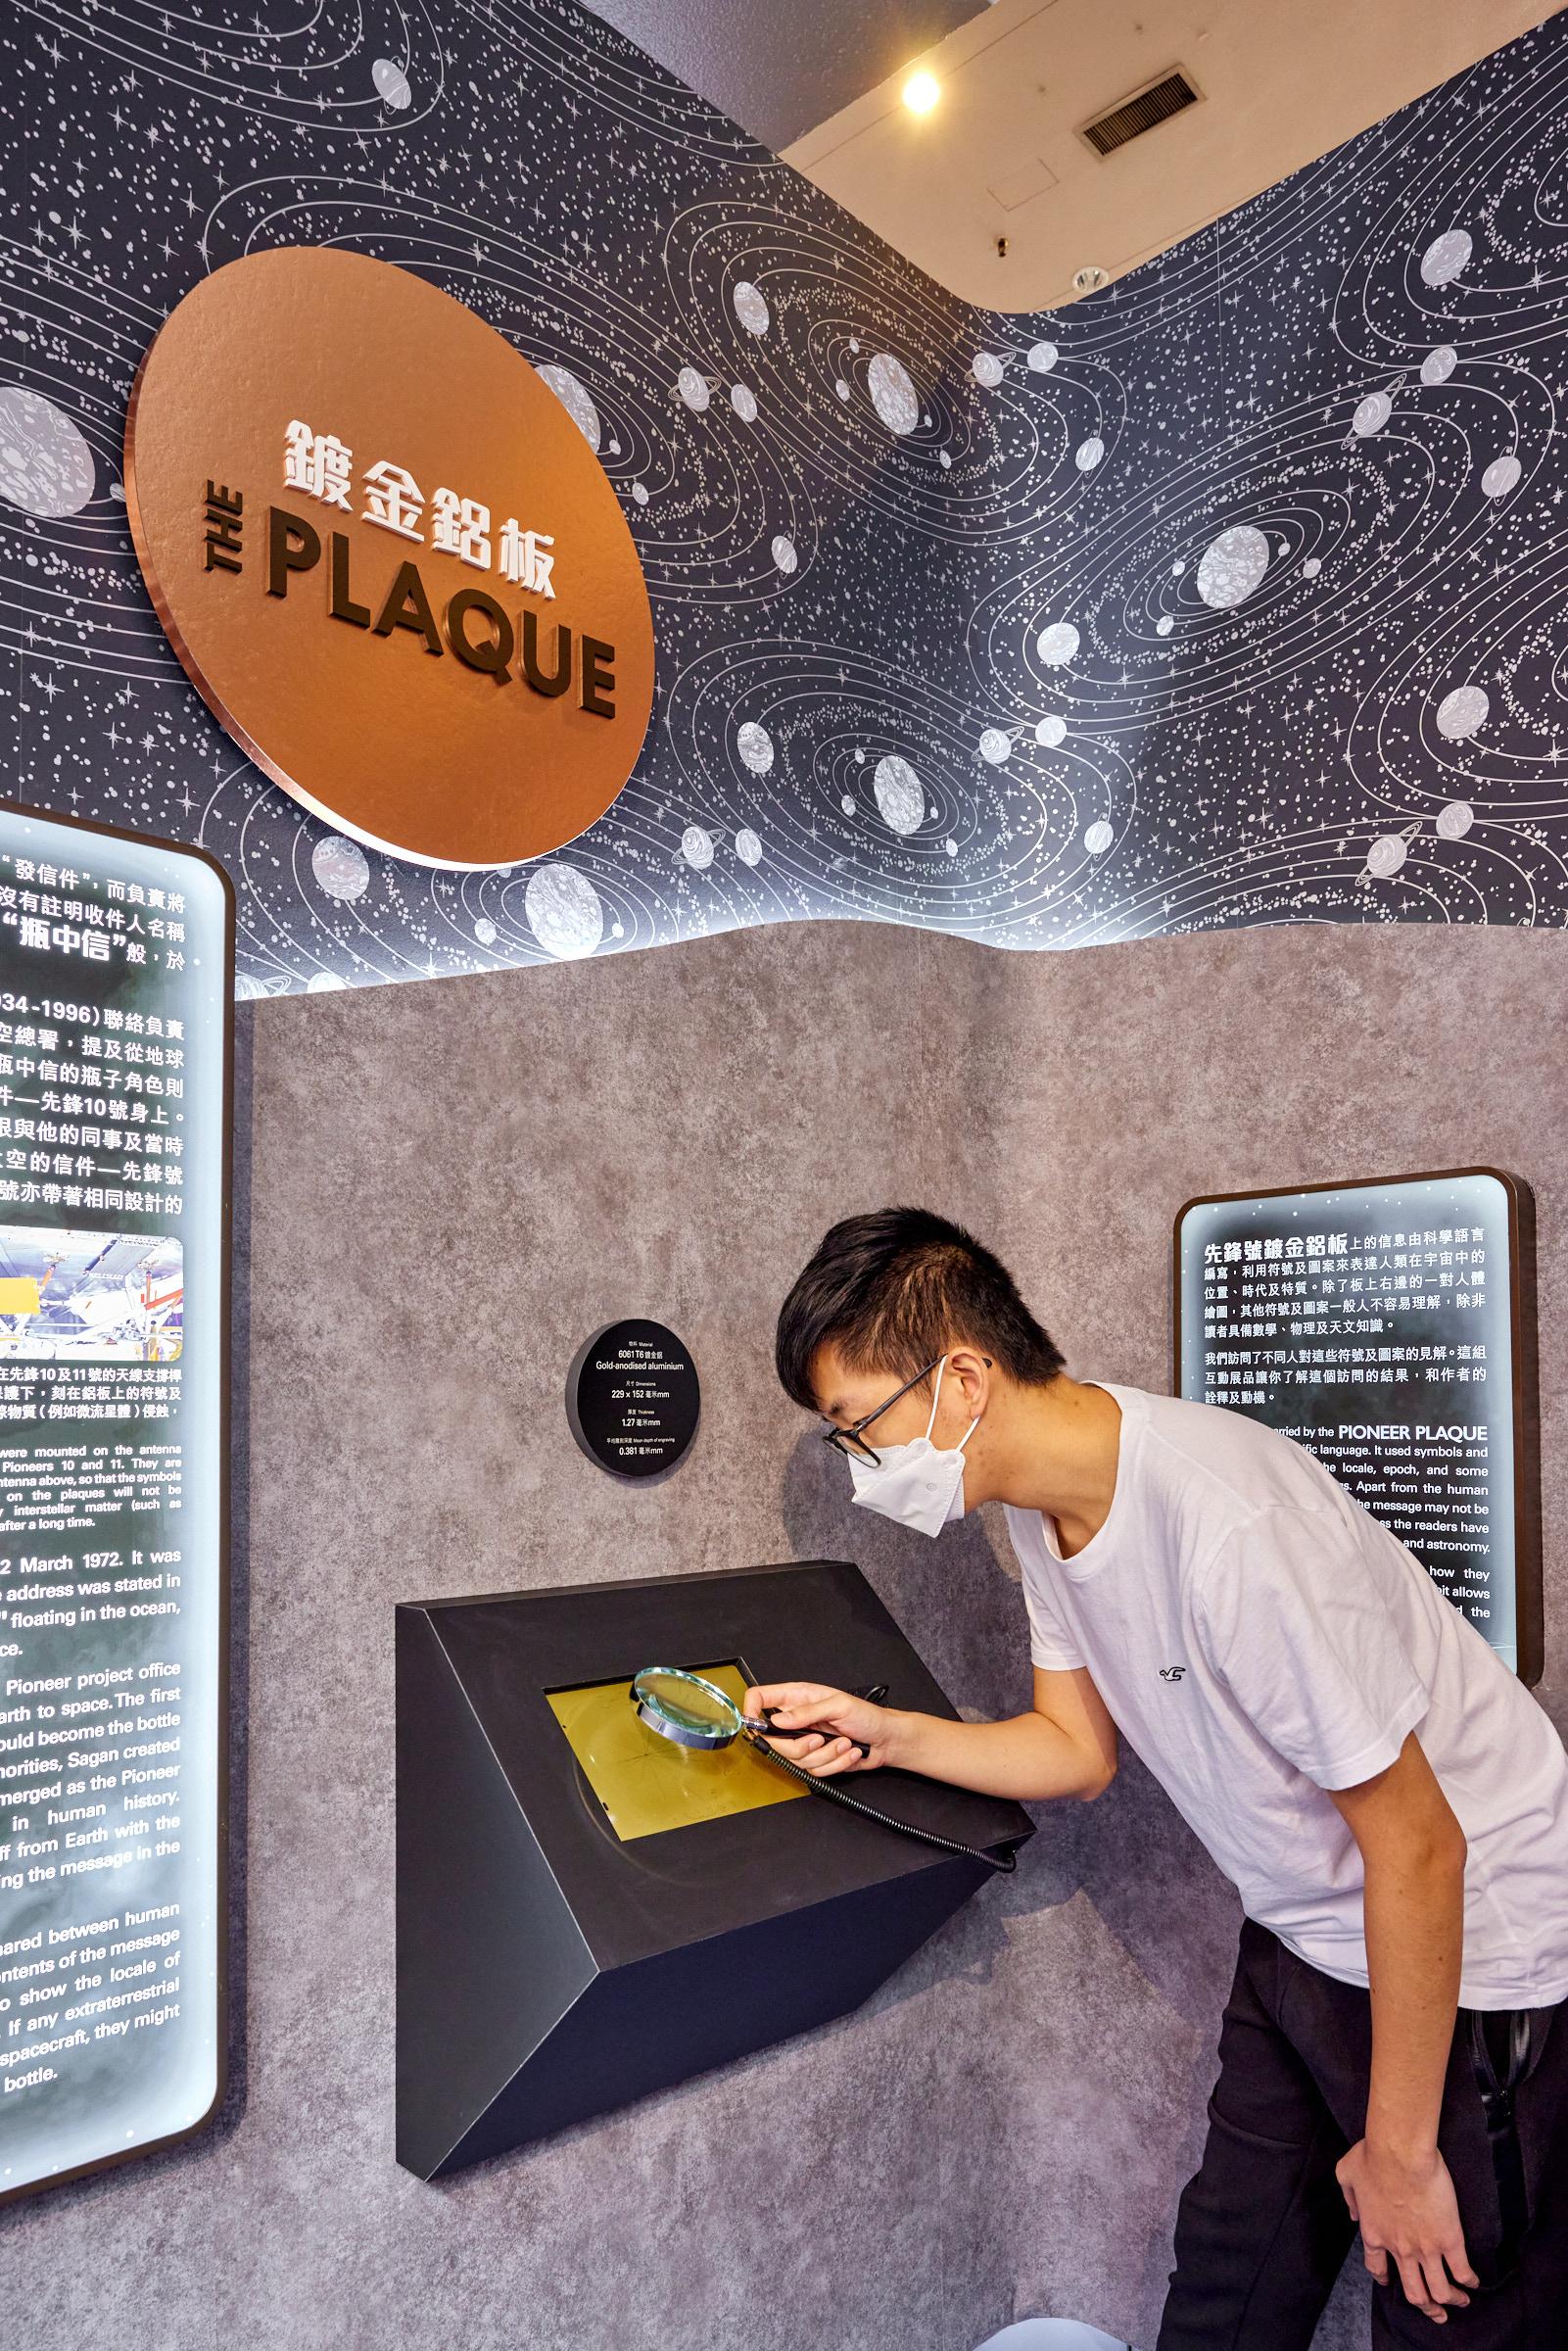 香港太空館明日（十月二十六日）推出全新專題展覽「先鋒號星際之旅」。圖示在上世紀七十年代升空的兩艘太空船——先鋒10號和11號所攜帶的鍍金鋁片的複製品。金屬片上除了展示一男一女的圖案，更包含了太陽系在宇宙中的位置等資訊。